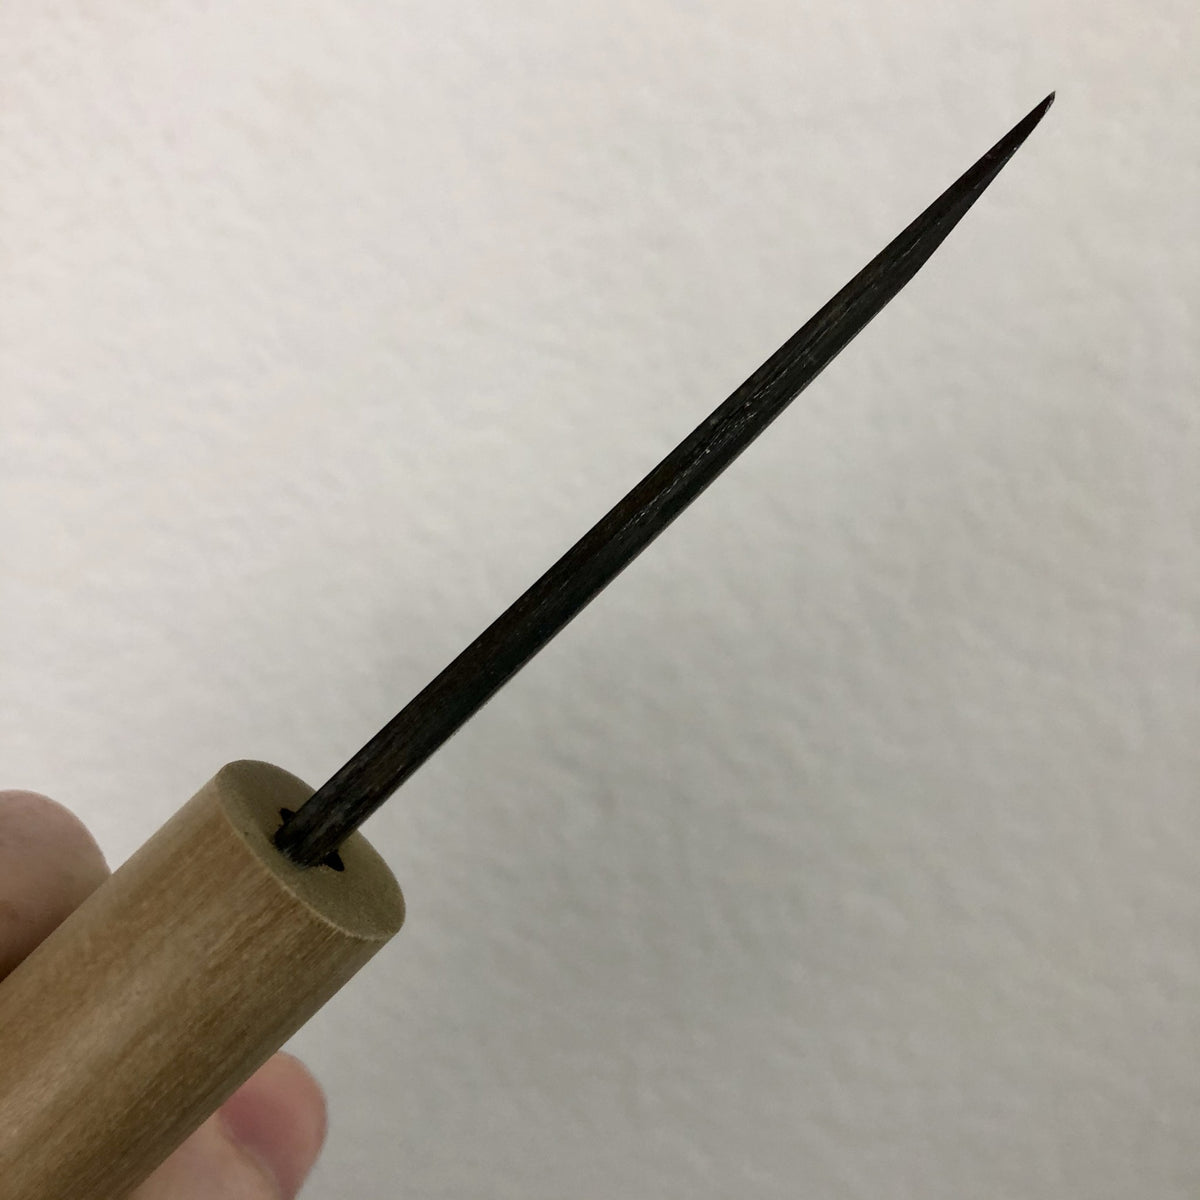 Baishinshi Kiridashi Wood Carving Knife (No Wooden Sheath) 21mm Wide –  Bernal Cutlery